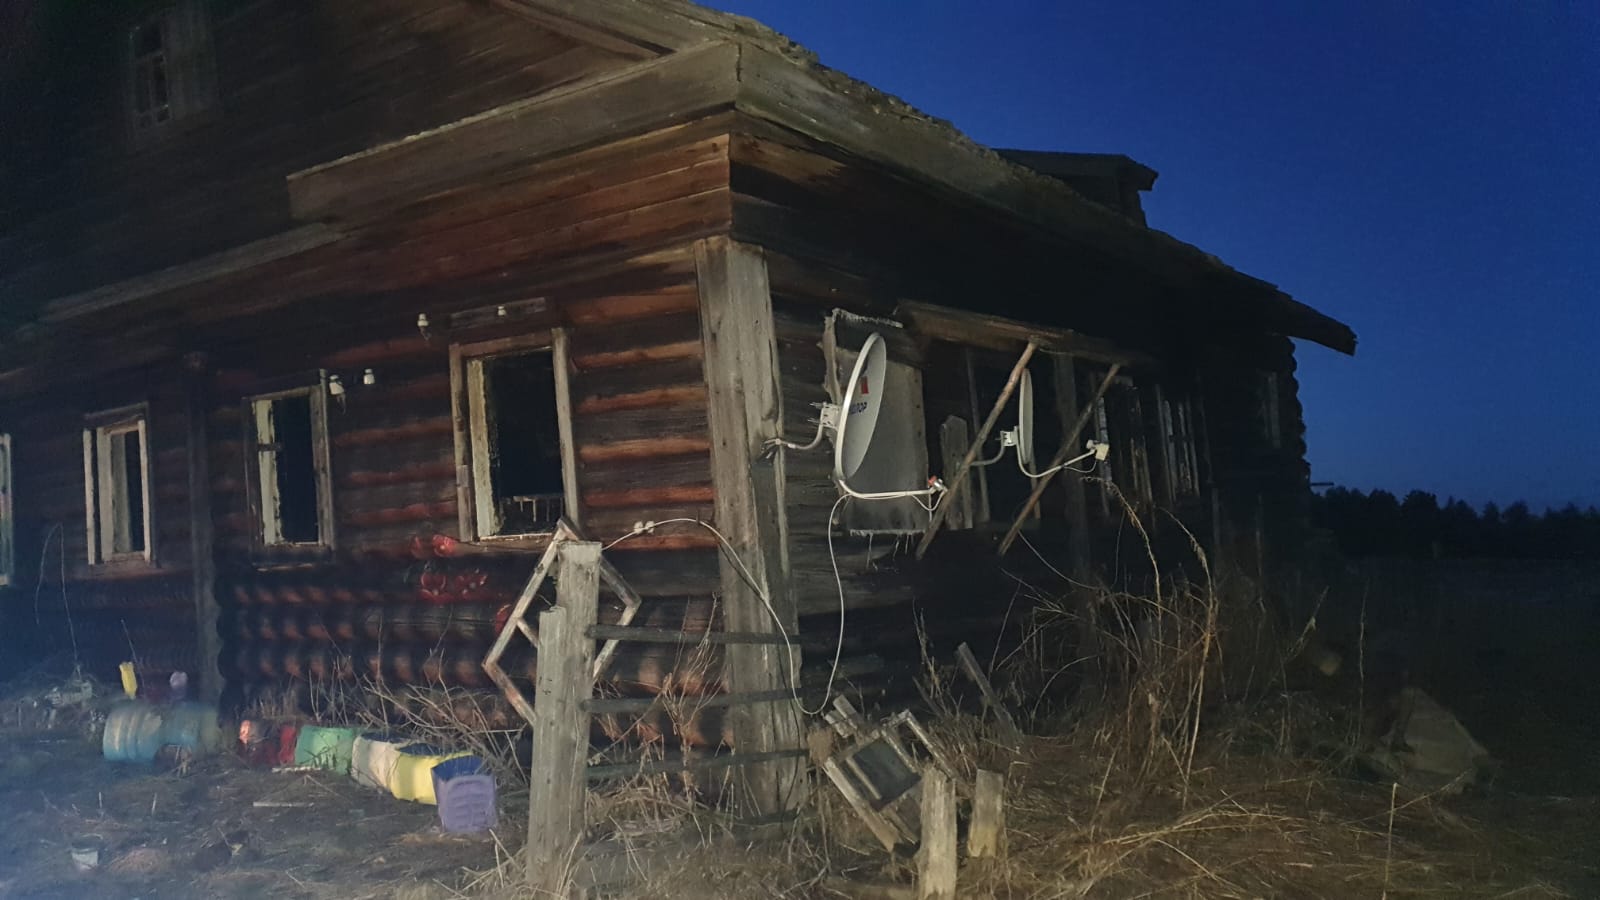 За выходные дни три человека погибли при пожарах в Архангельской области